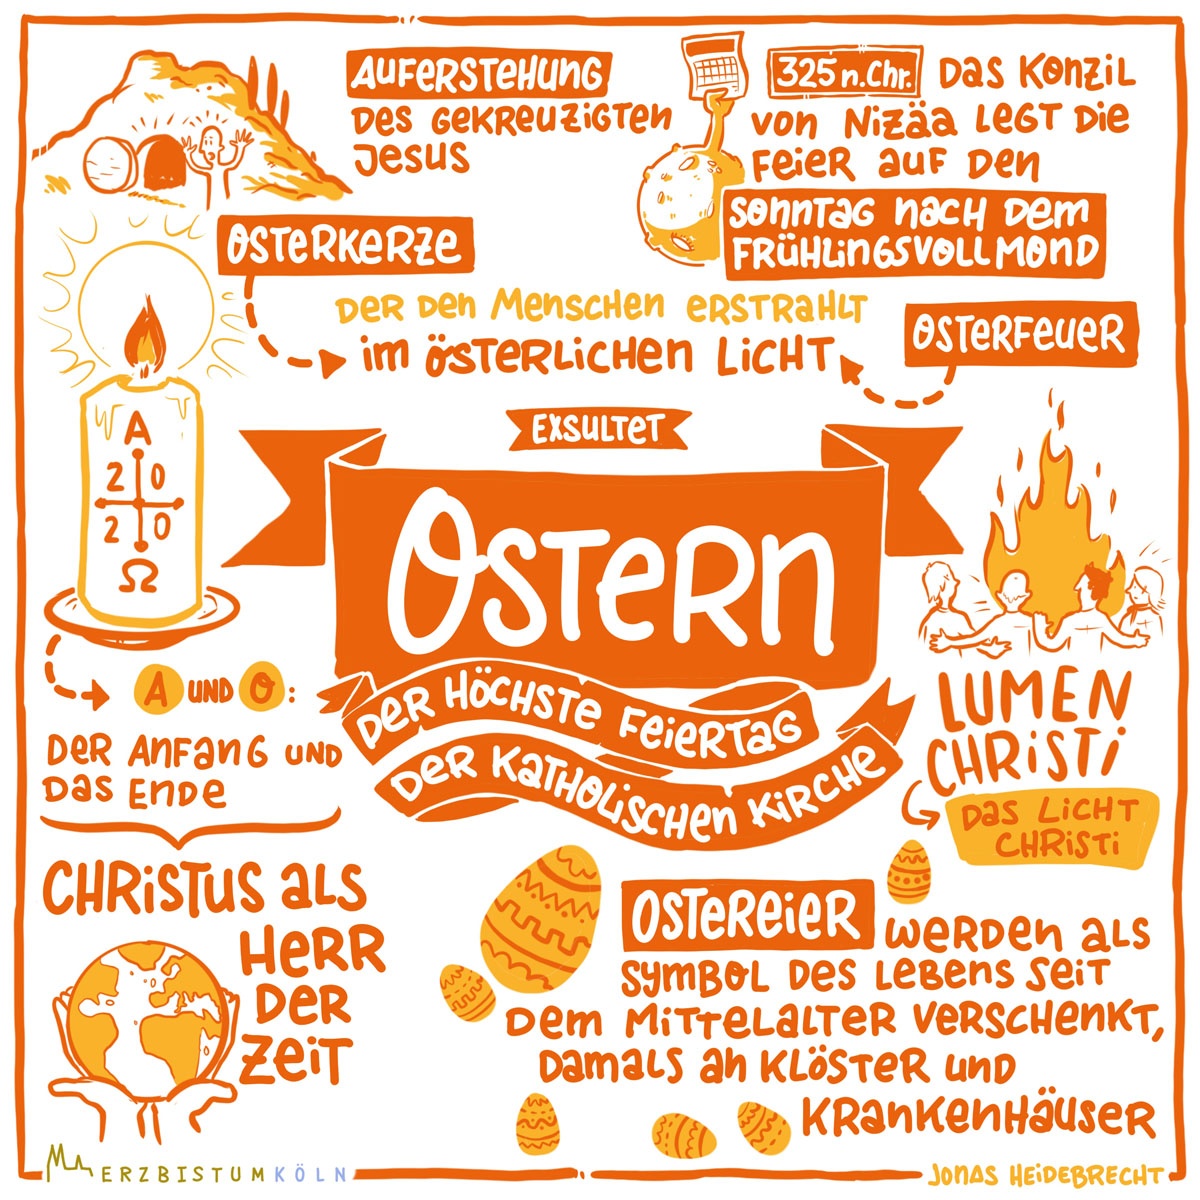 Was ist Ostern? (c) Erzbistum Köln